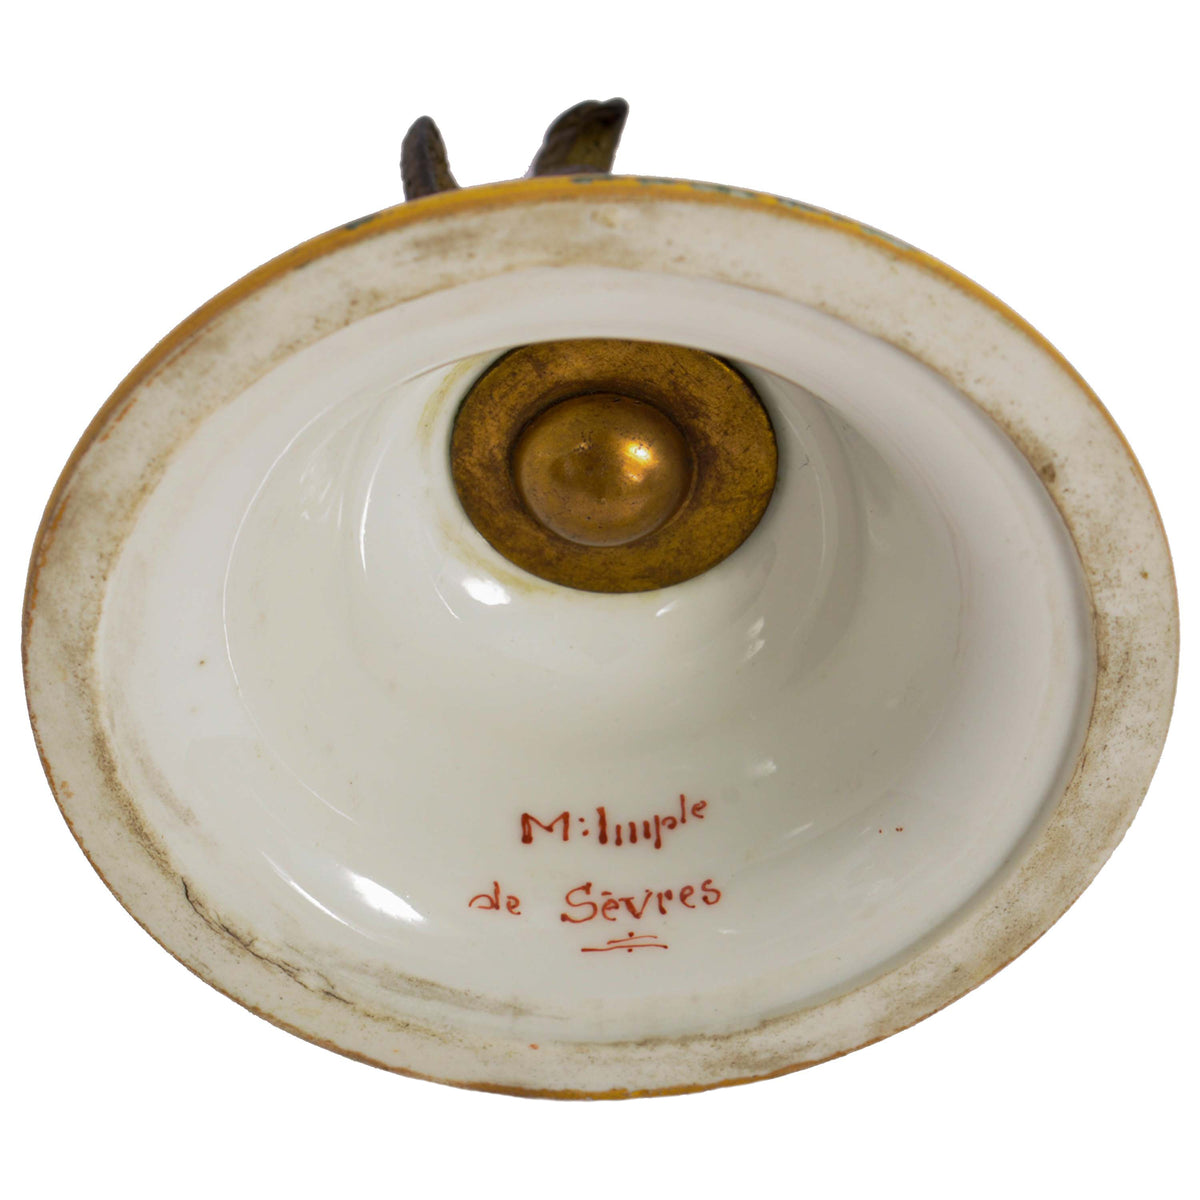 Pair Antique French 'Sevres' Red Porcelain Gilt Bronze Pot Pourri Urns, 1804-1809